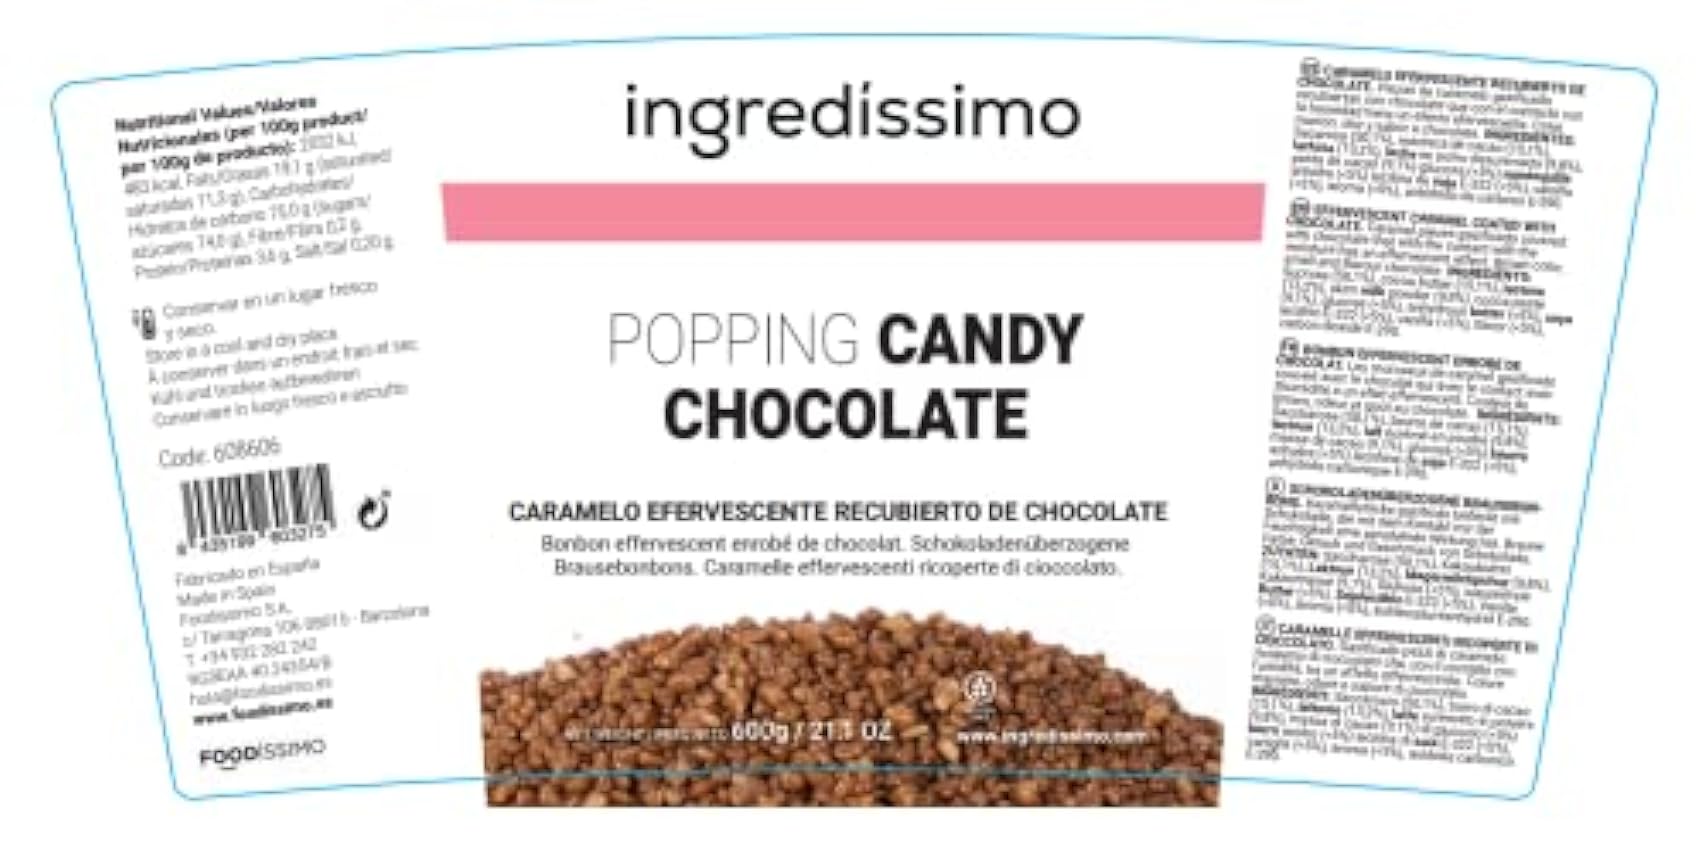 Ingredíssimo - Popping Candy Chocolate, 600 g, Topping de Piezas de Caramelo Gasificado, Decoración Comida, Recubiertas con Chocolate, Efecto Efervescente con Humedad, Color Marrón hPCAAbgg